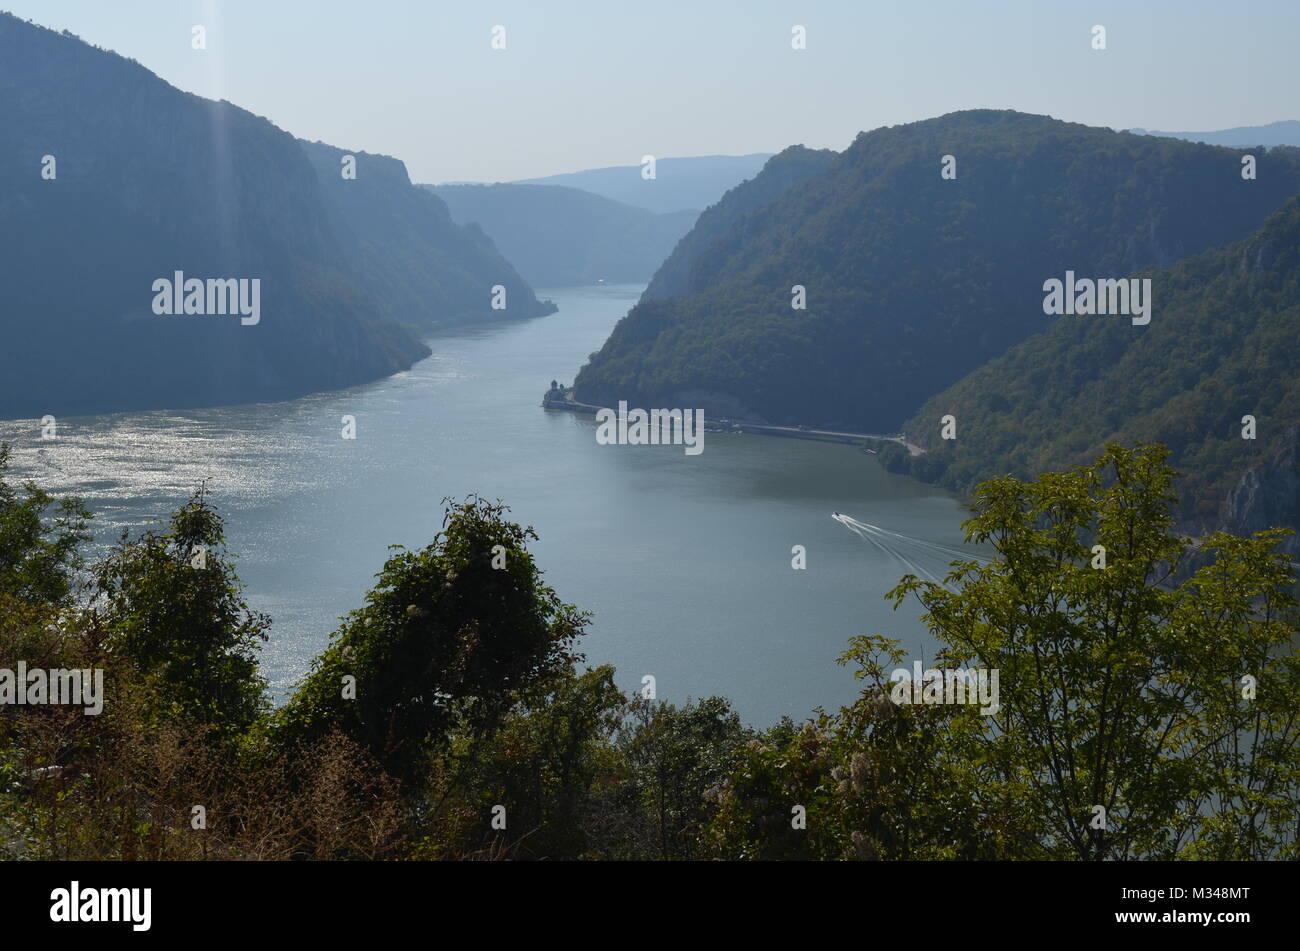 Die đerdap Canyon. Sie können sehen, mraconia Kloster auf dem rechten Ufer der Donau - Dies ist in Rumänien. Am linken Ufer des Flusses ist in Serbien Stockfoto